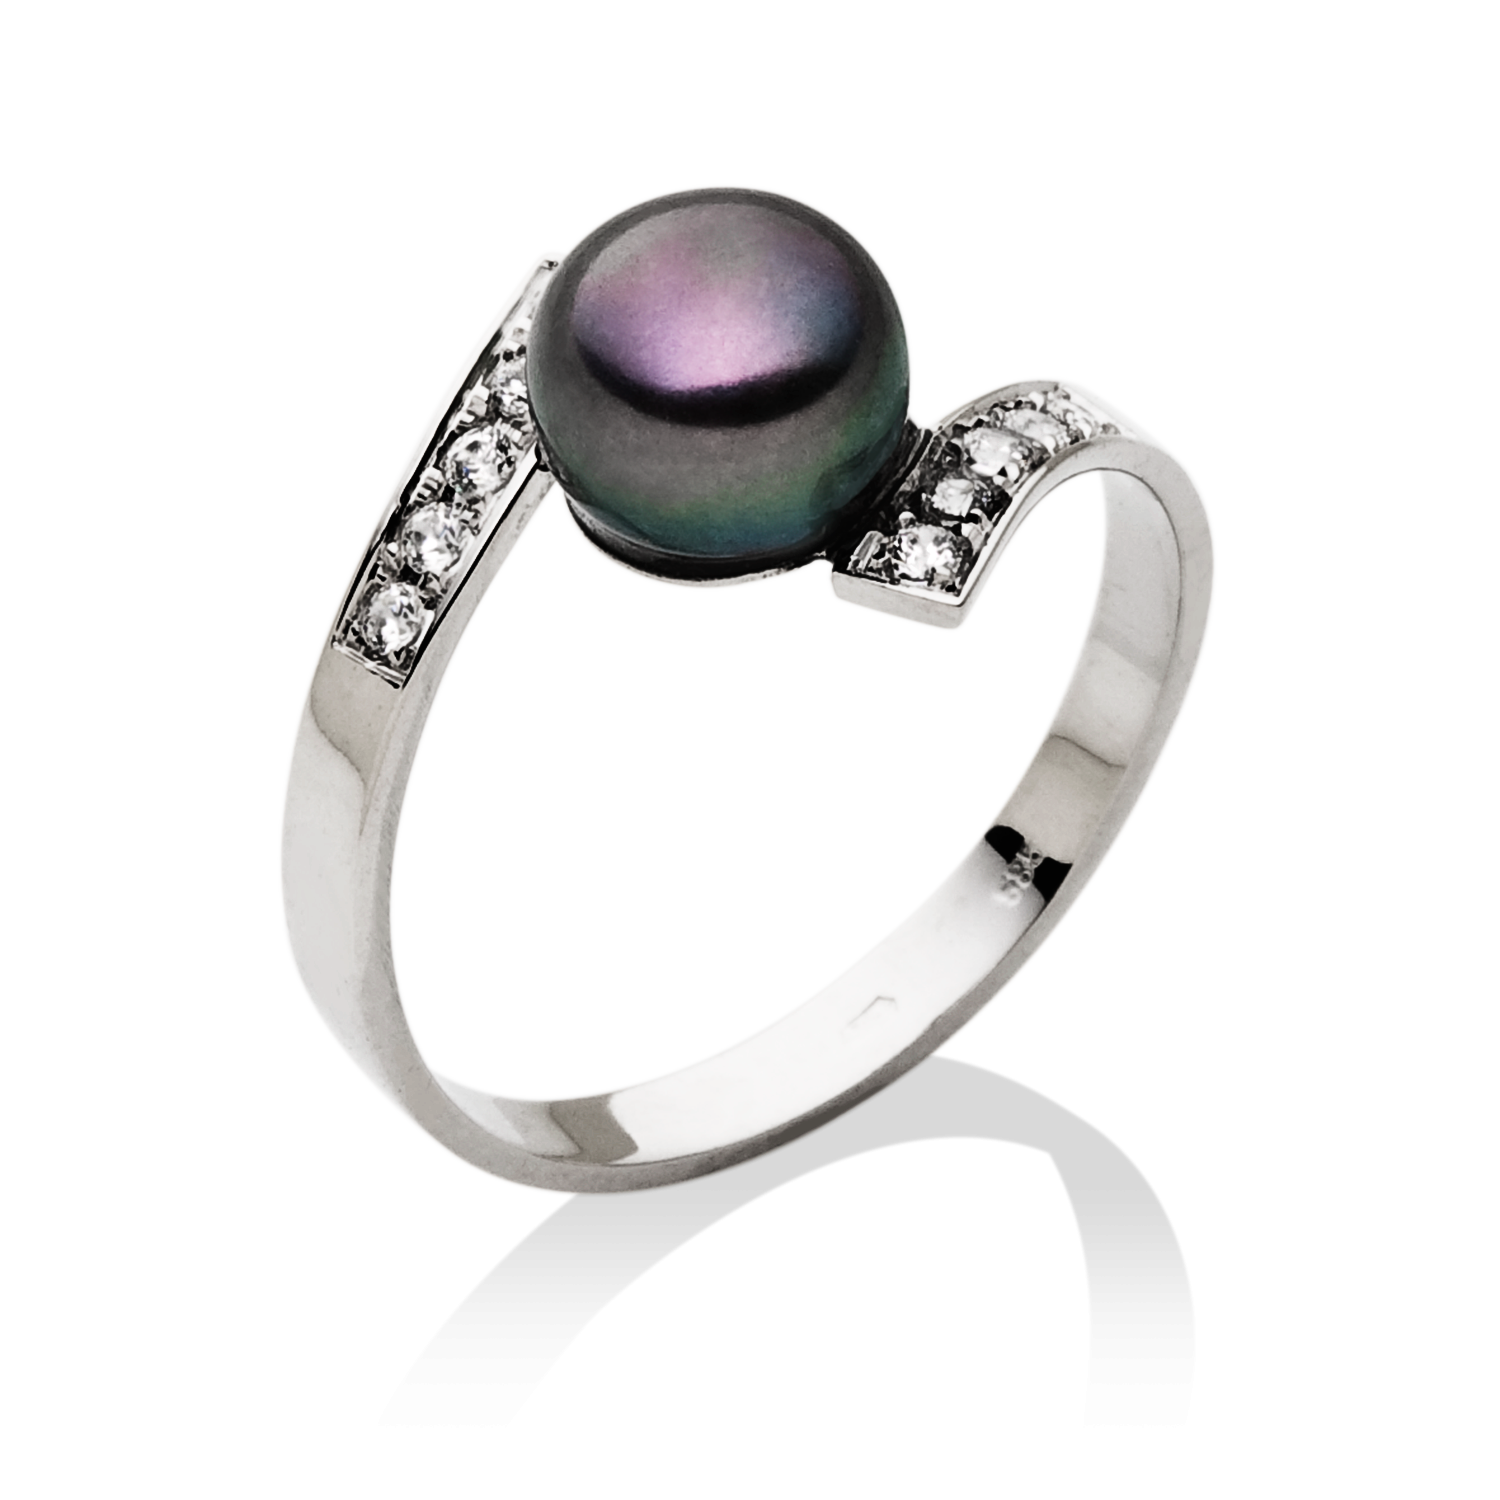 vyjímečný prsten s velkou černou perlou a brilianty